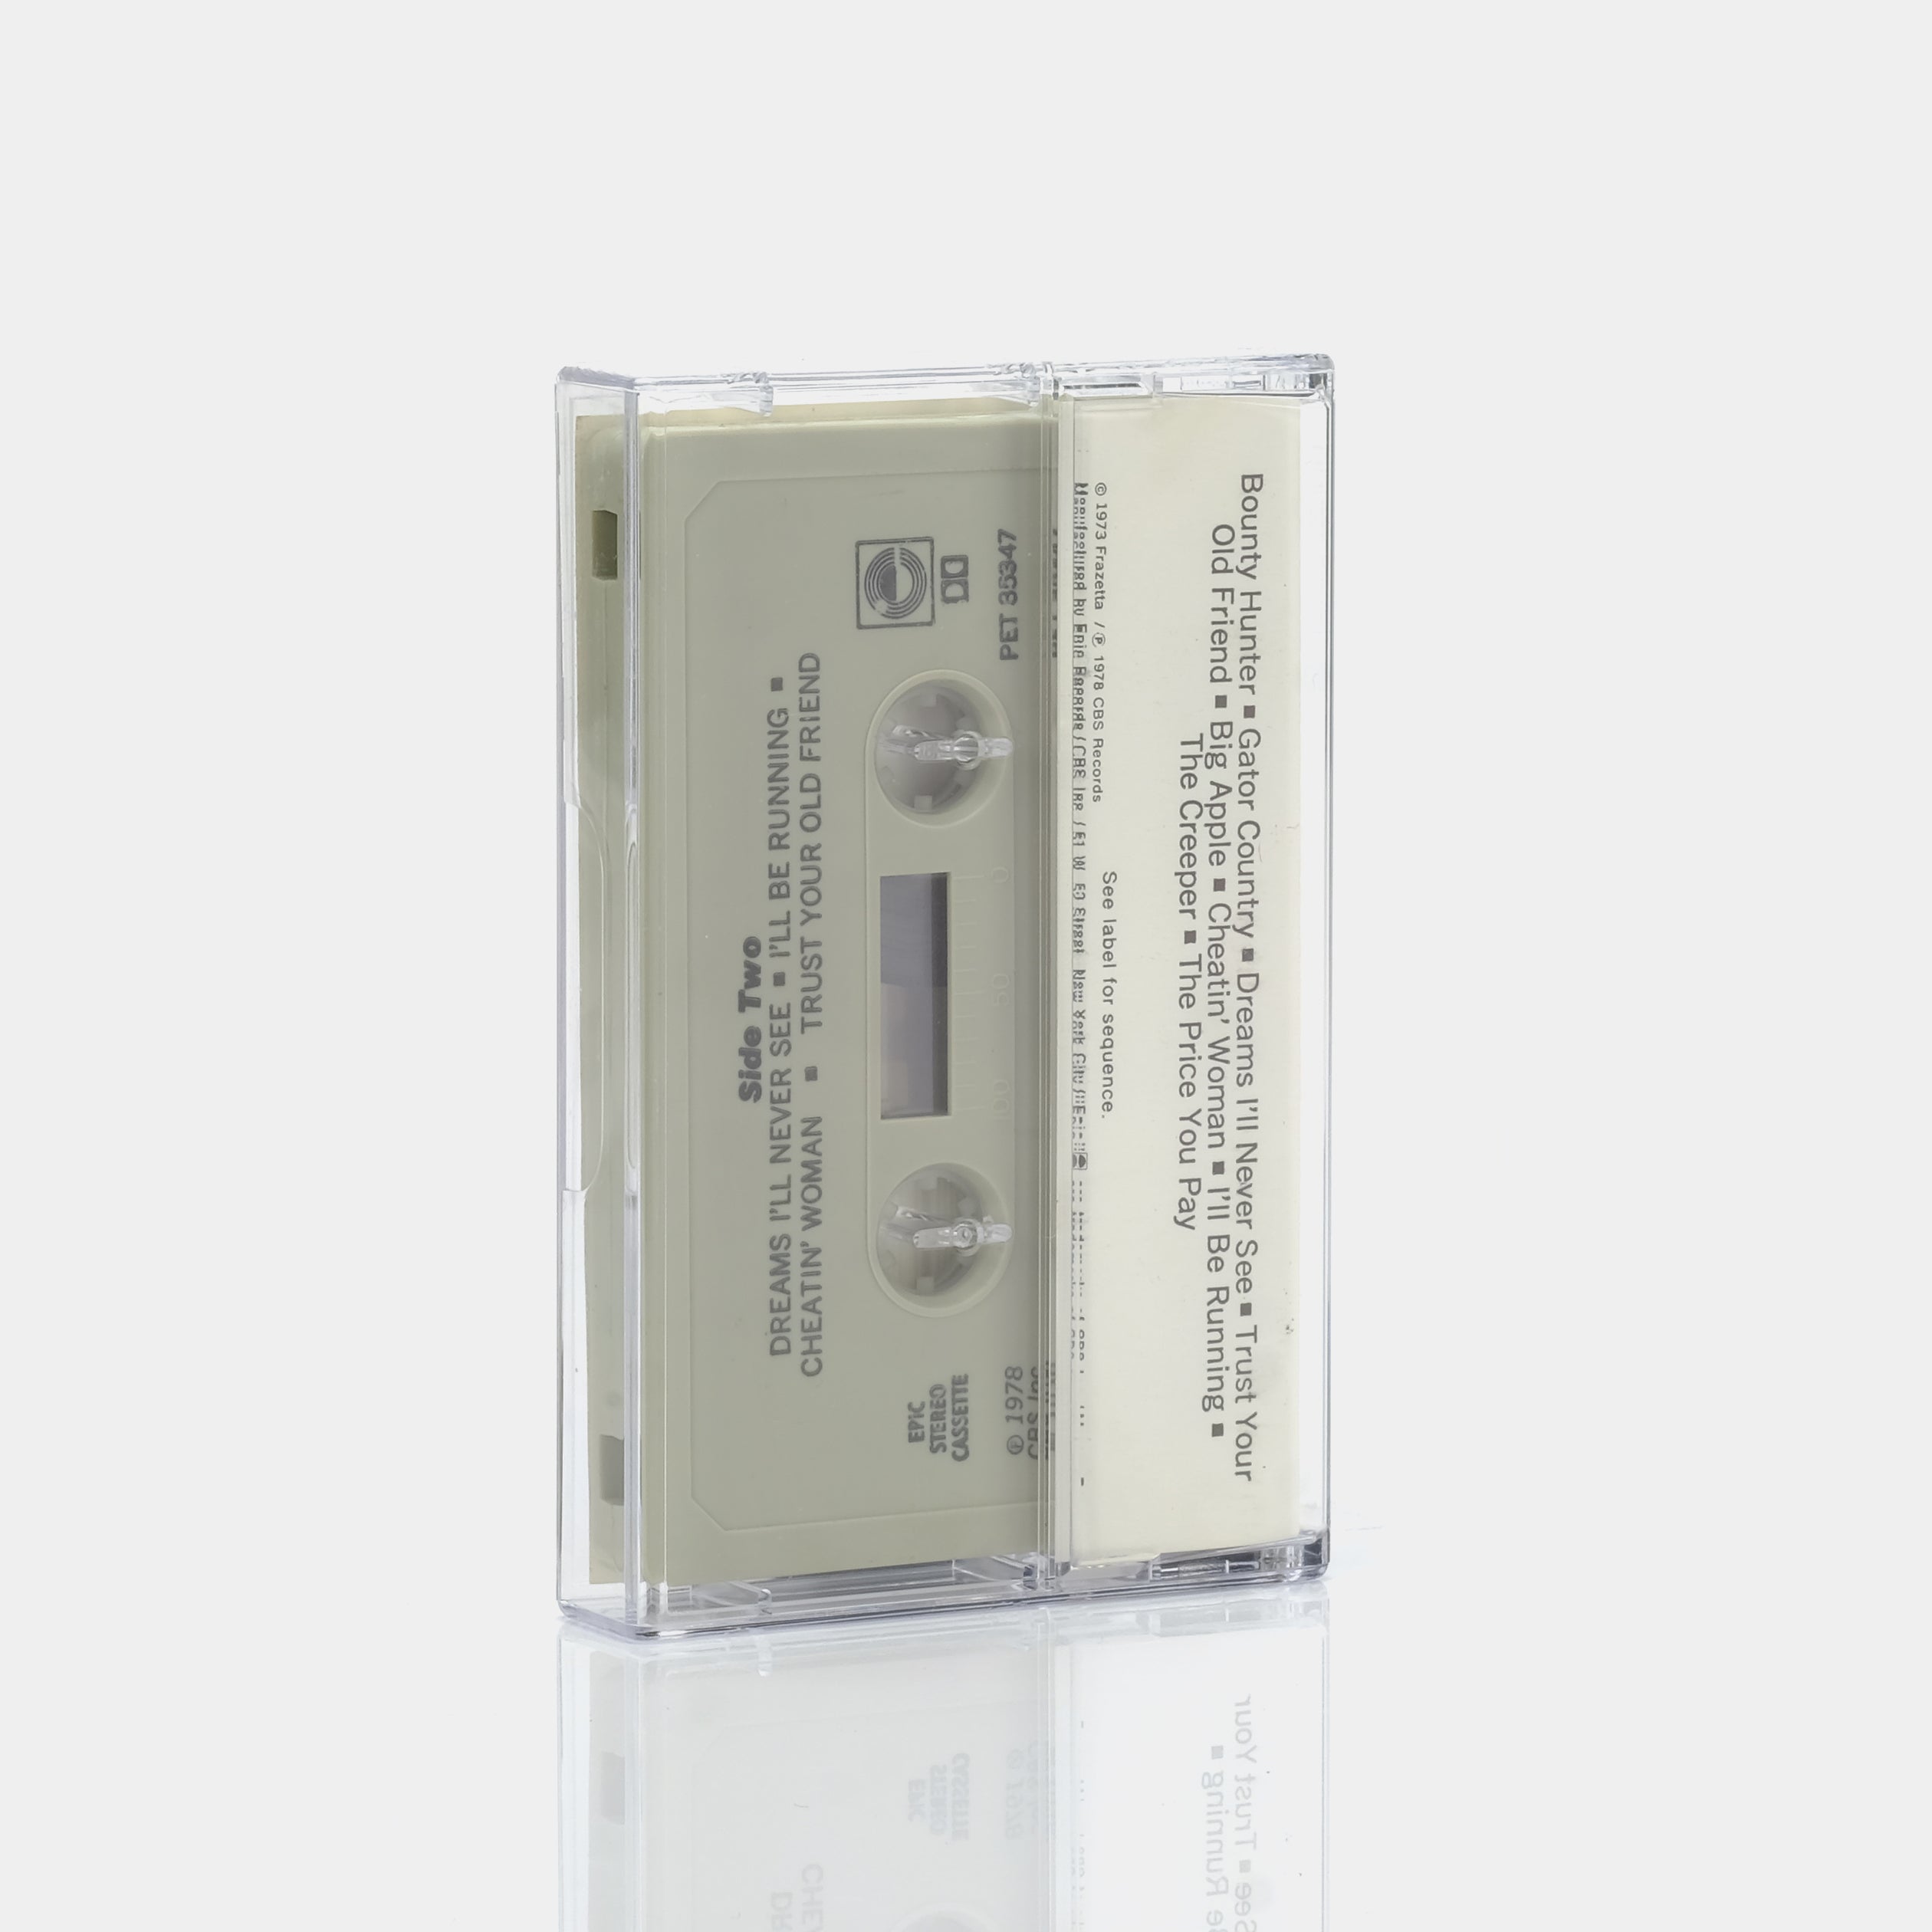 Molly Hatchet - Molly Hatchet Cassette Tape